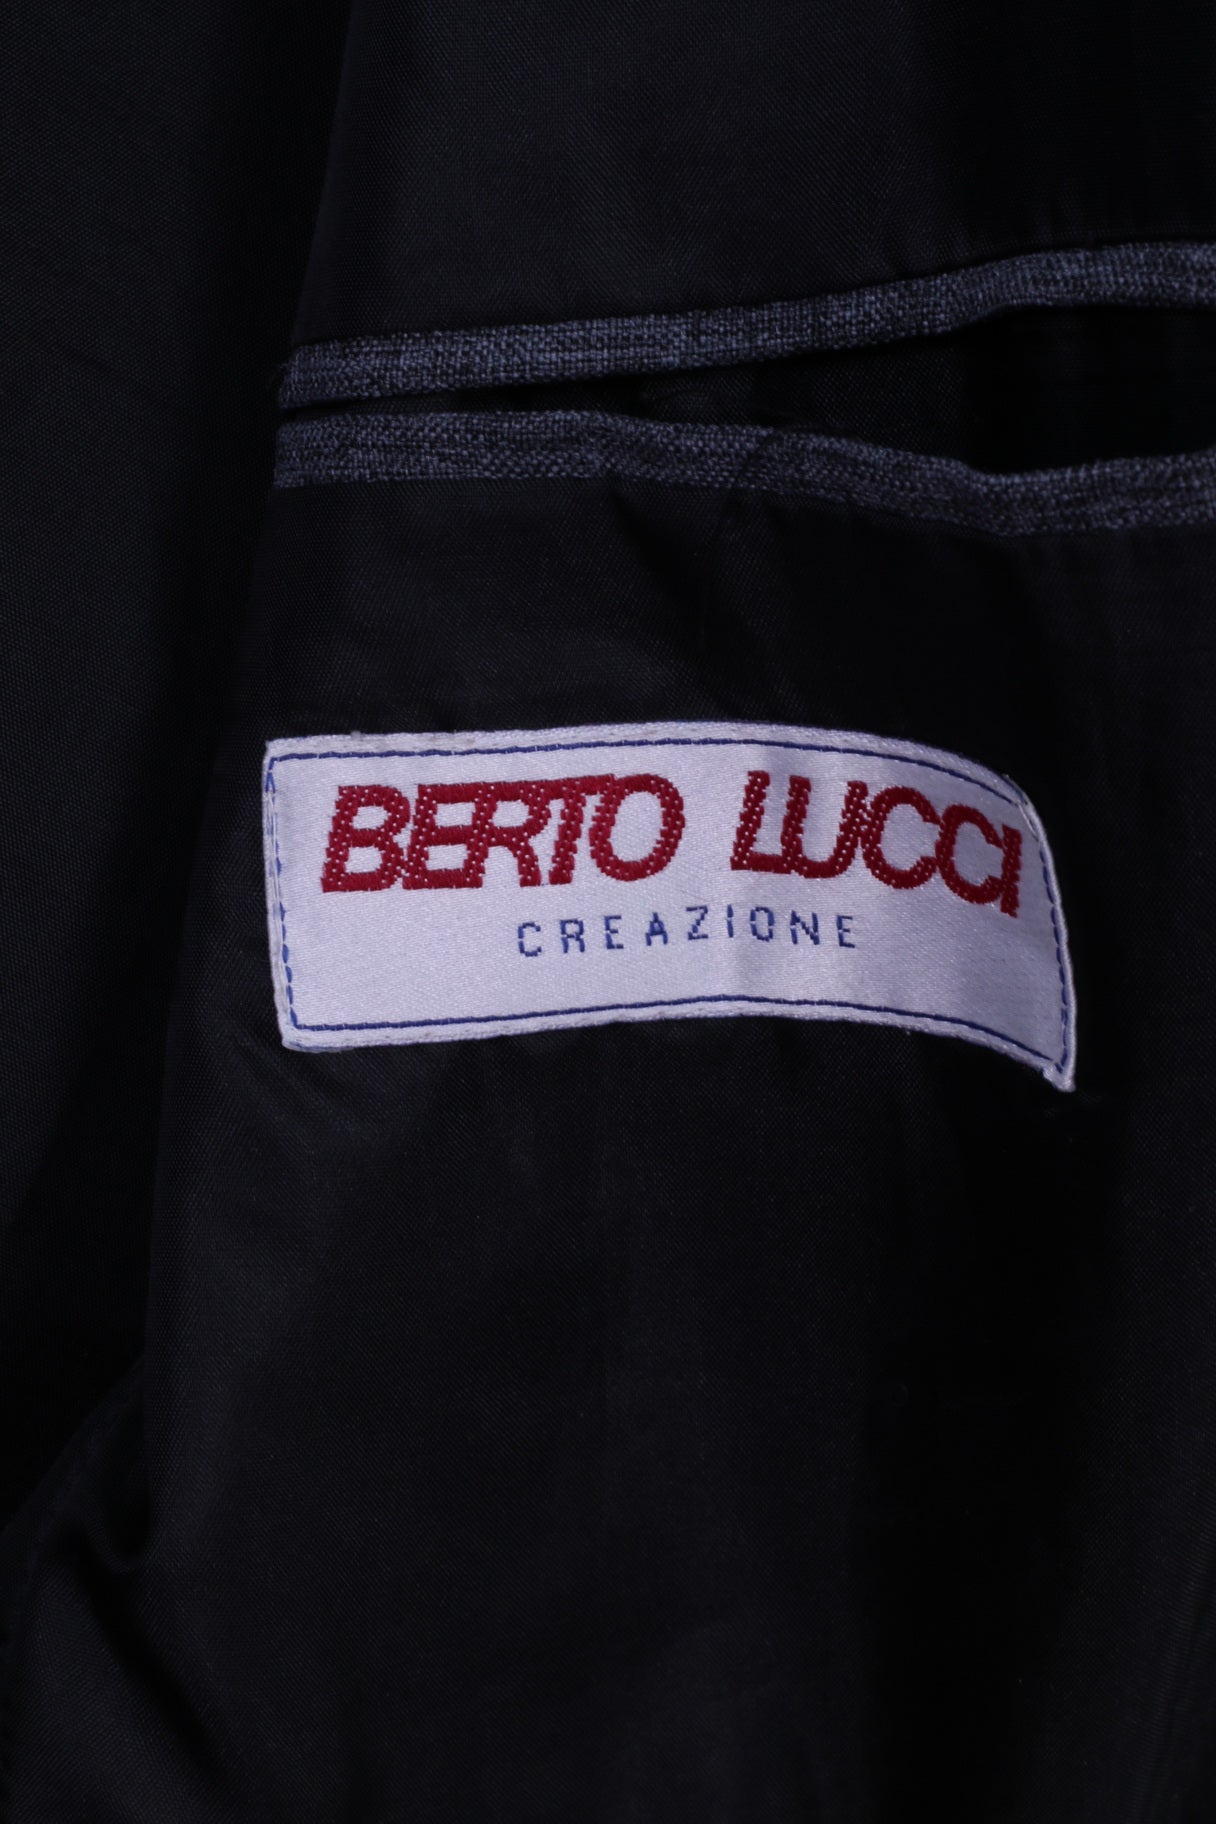 Berto Lucci Creazione Men 40 50 Blazer Blue Vintage Single Breasted Jacket